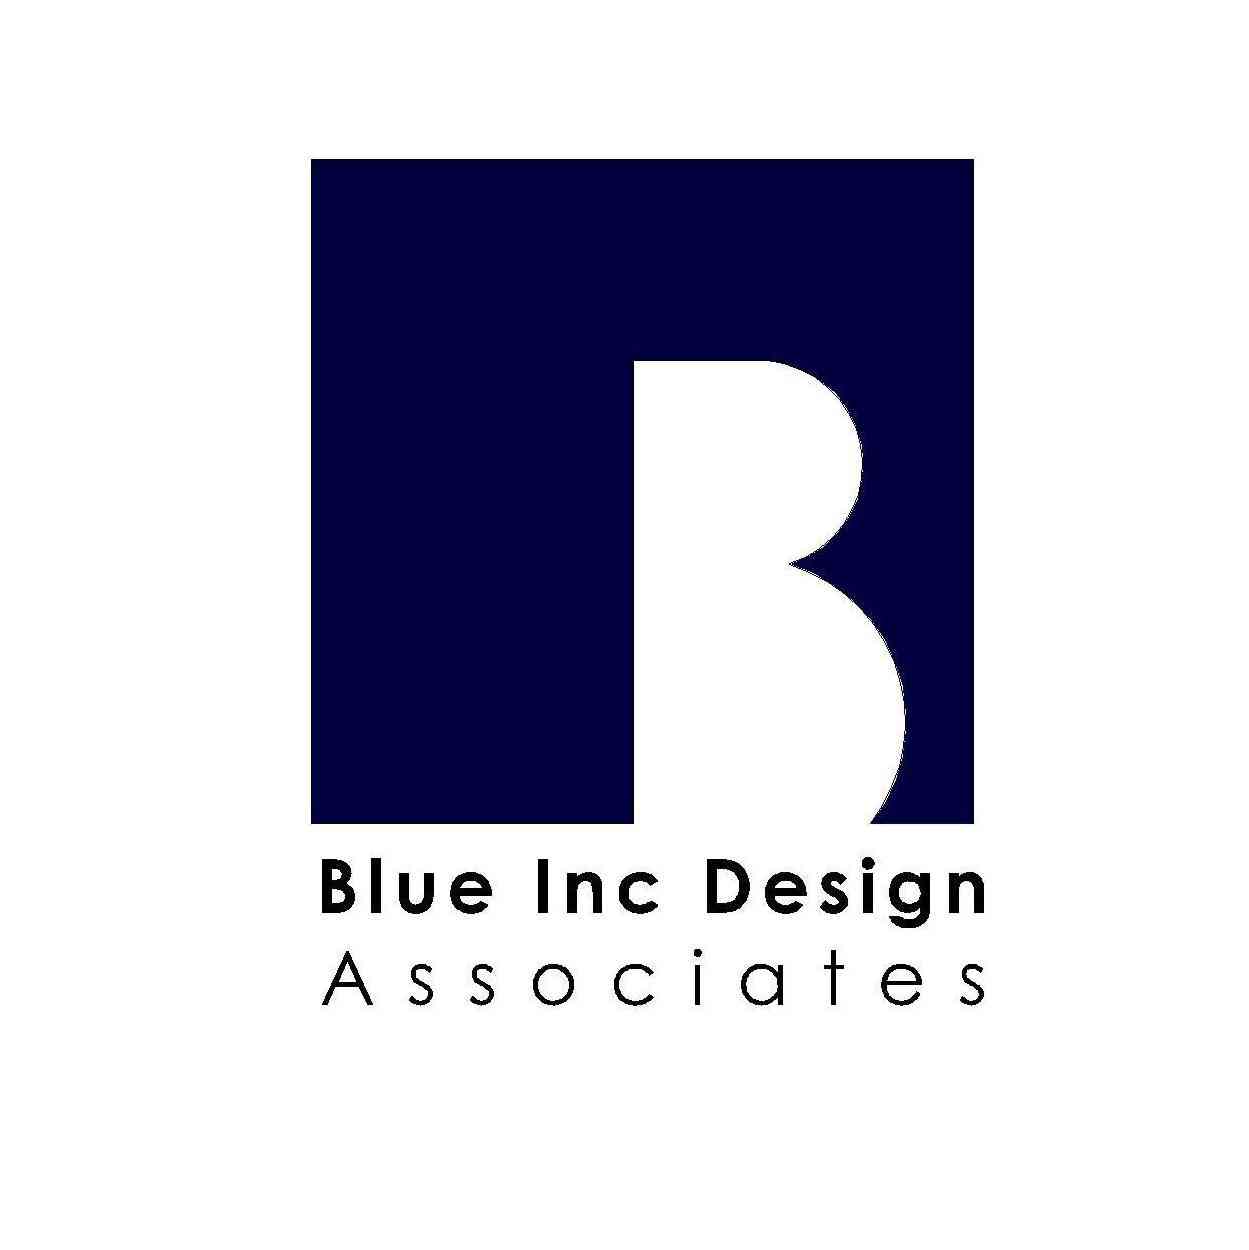 Blue Inc Design Associates